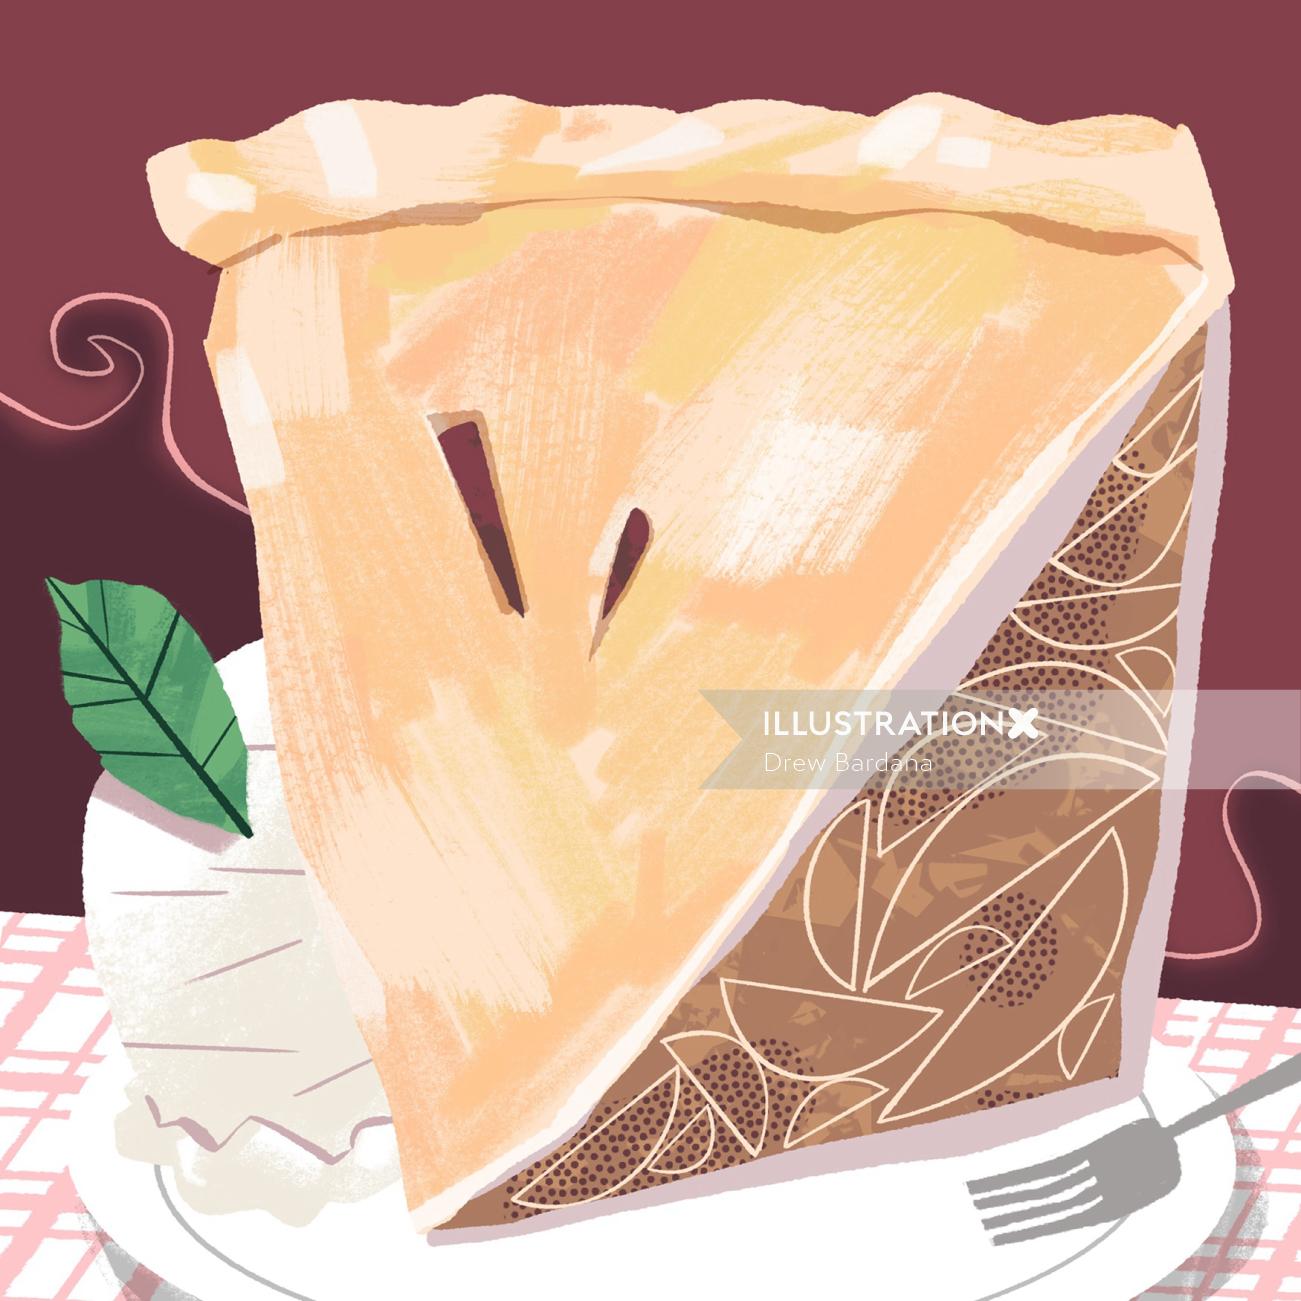 Comida e bebidas torta de maçã quente